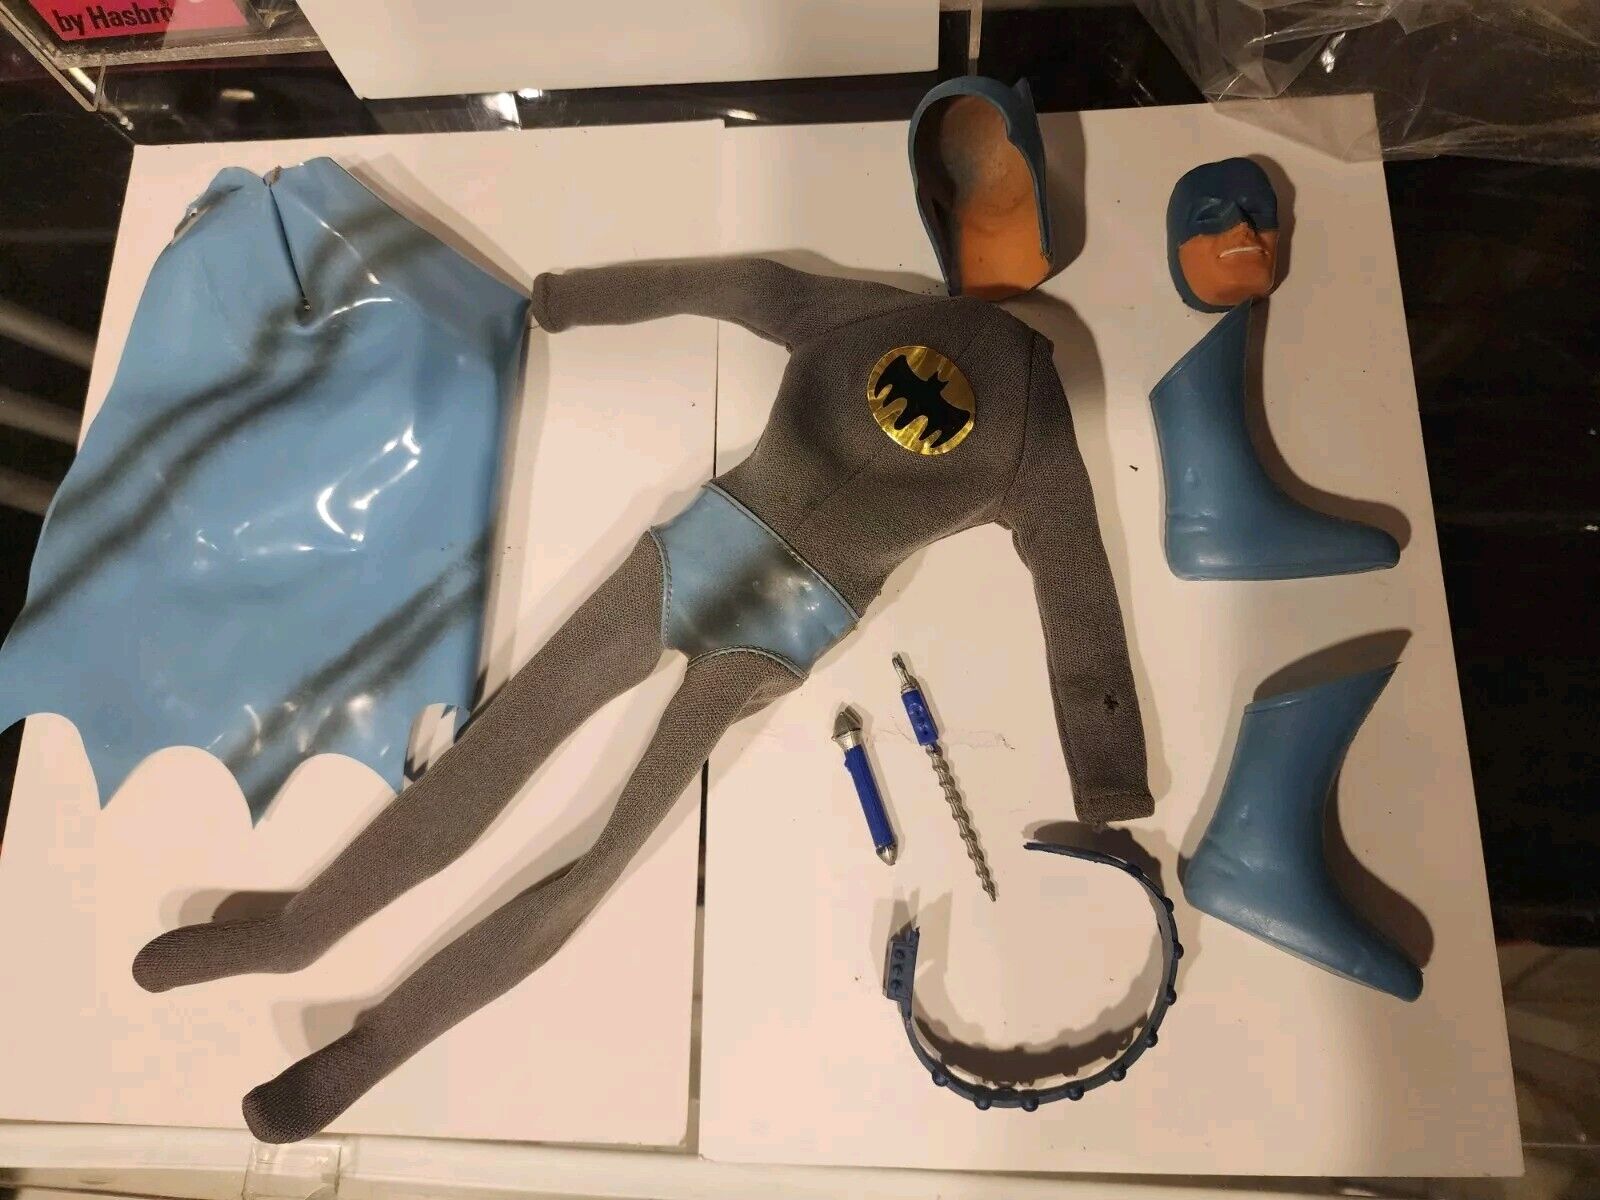 Vtg 1966 Ideal Captain Action Batman Mask Suit Outfit Clothing & Accessories